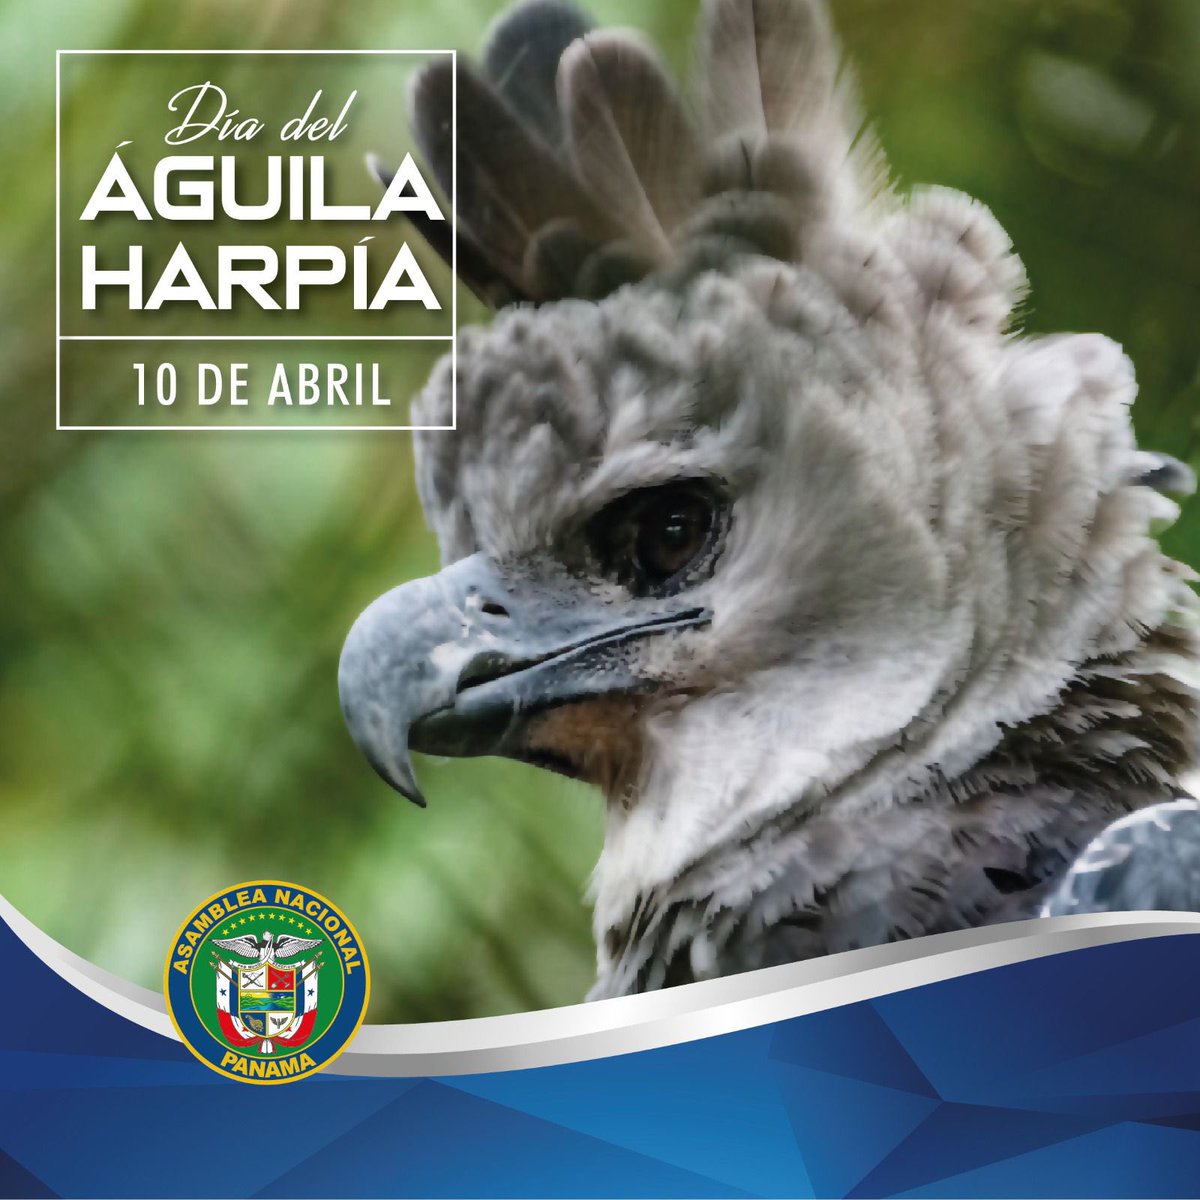 ¿Sabías que la Ley 18 del 10 de abril de 2002 declara al Águila Harpía como ave nacional de Panamá? #tuvozimporta